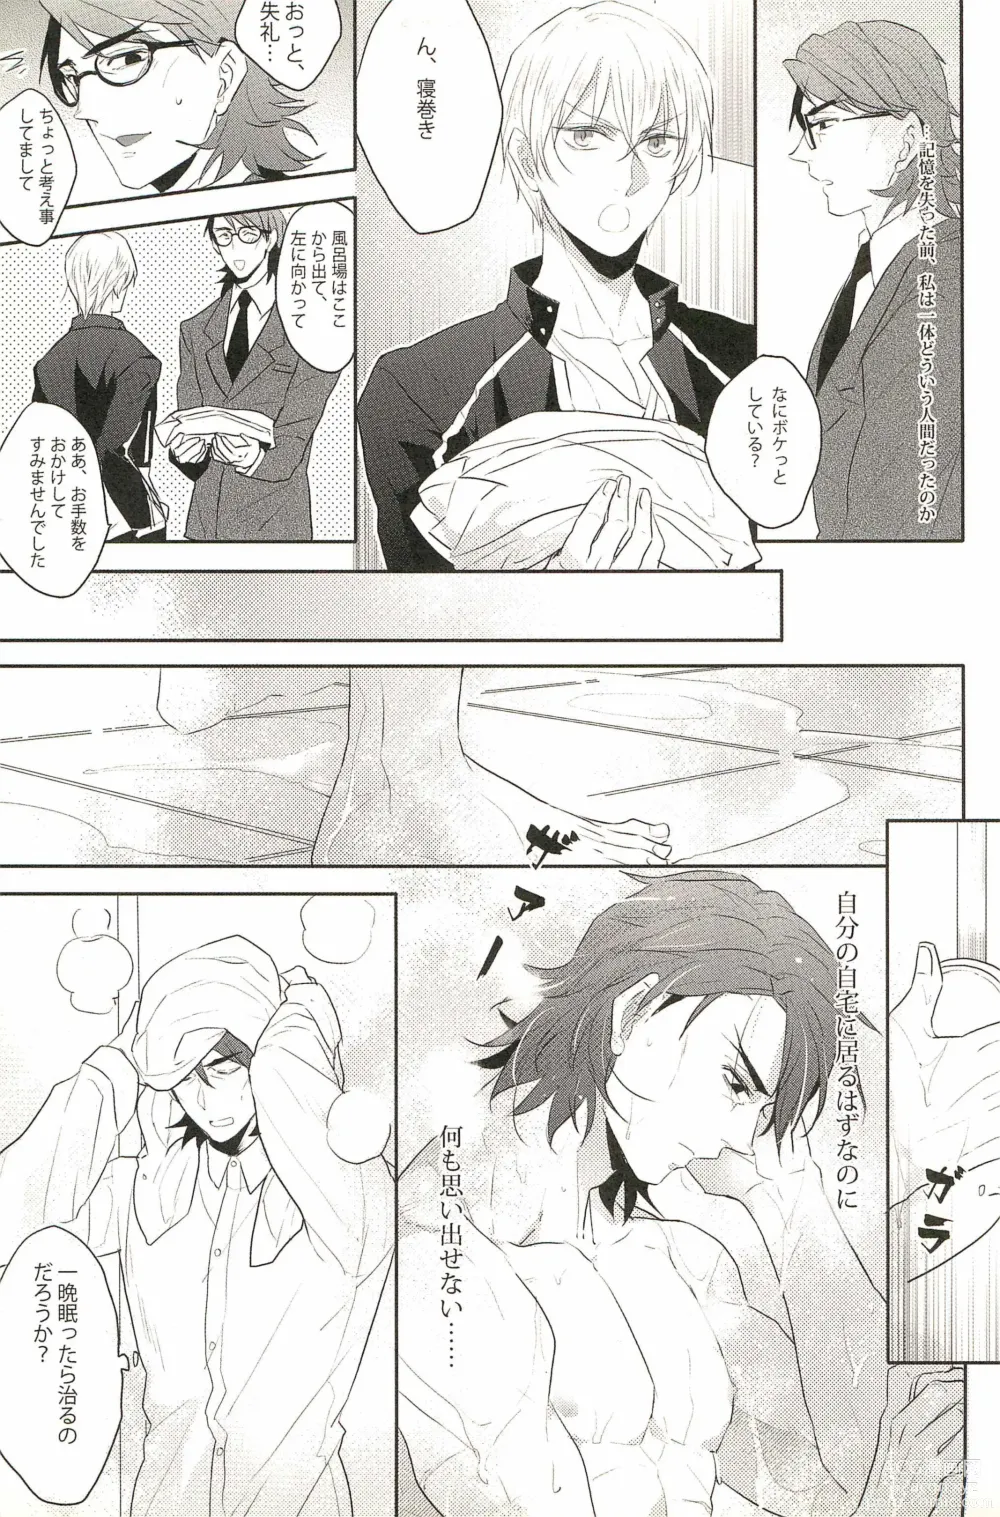 Page 11 of doujinshi Warera Dosei Shite Iru.